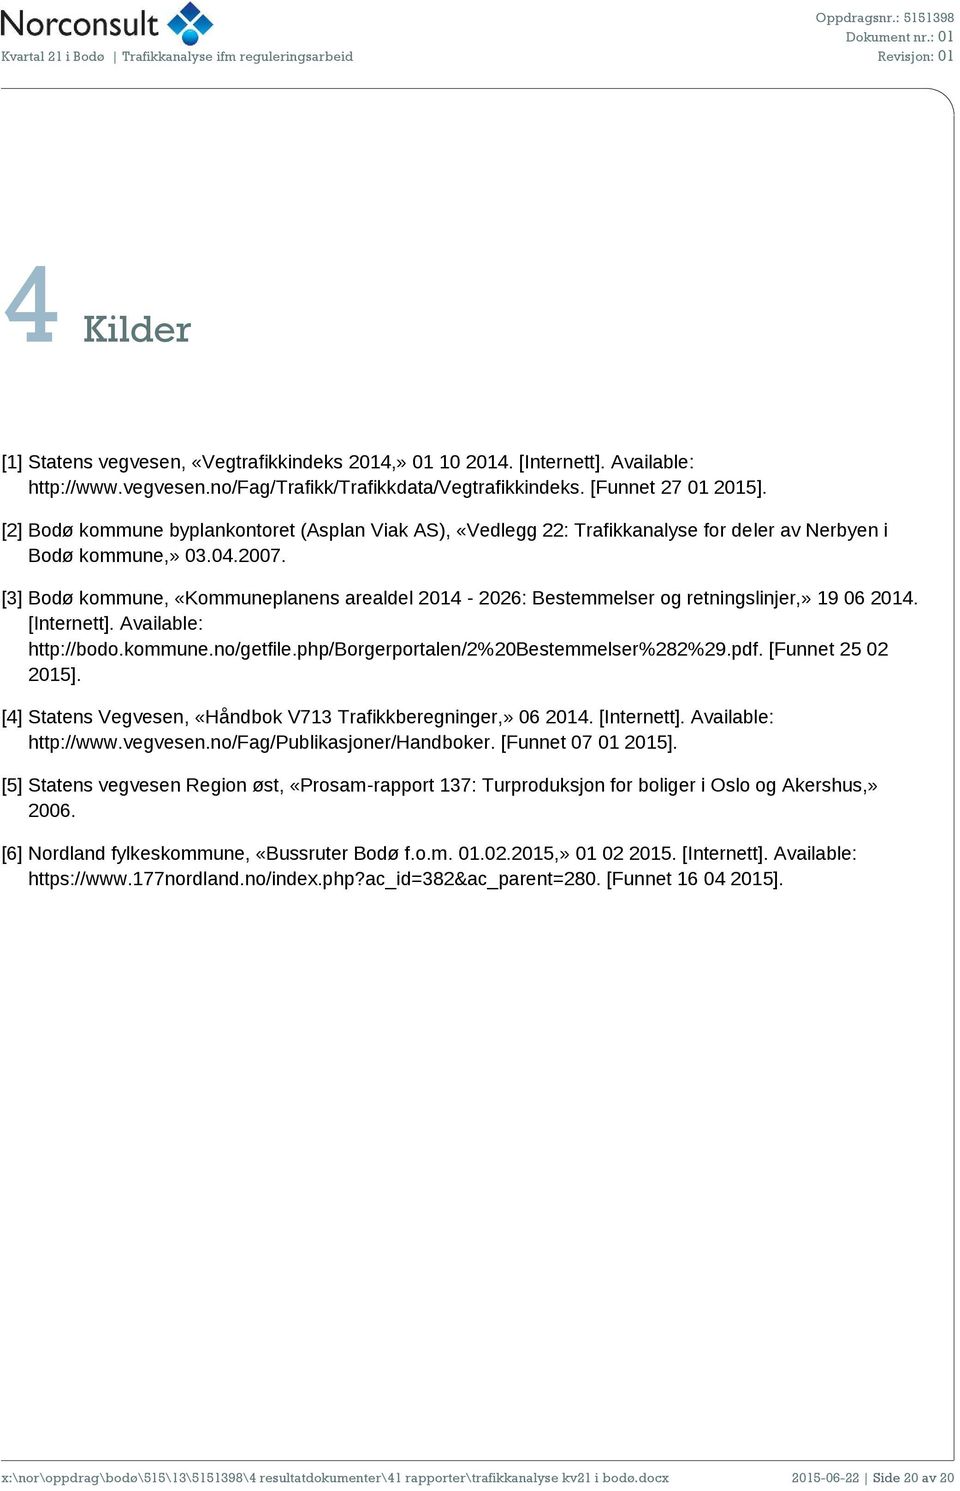 [3] Bodø kommune, «Kommuneplanens arealdel 2014-2026: Bestemmelser og retningslinjer,» 19 06 2014. [Internett]. Available: http://bodo.kommune.no/getfile.php/borgerportalen/2%20bestemmelser%282%29.